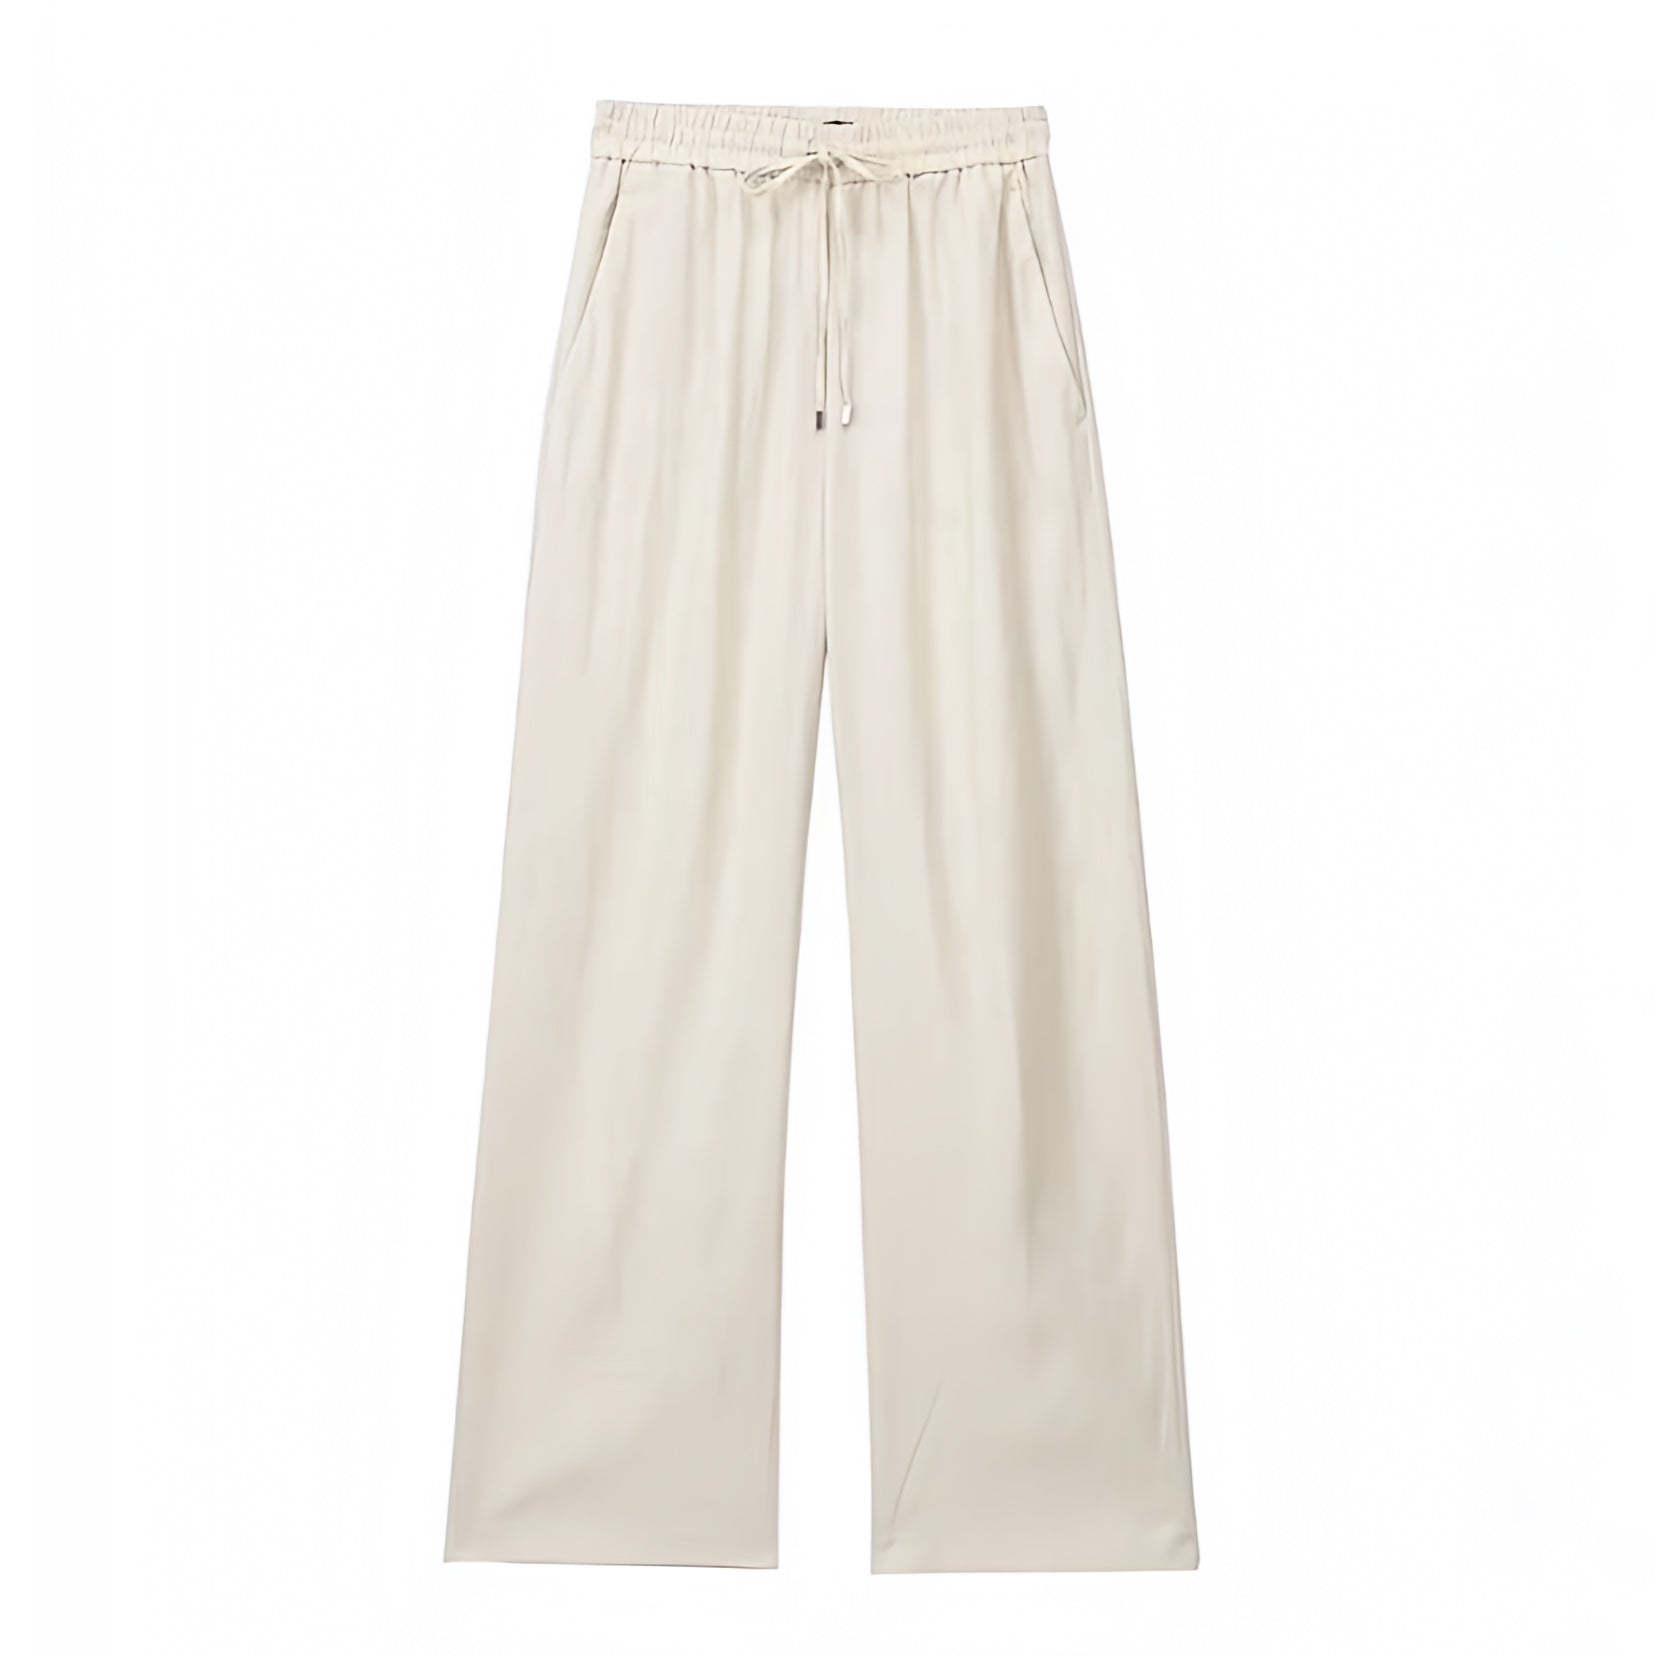 Women's Light Beige Low Rise Cotton Linen Pants